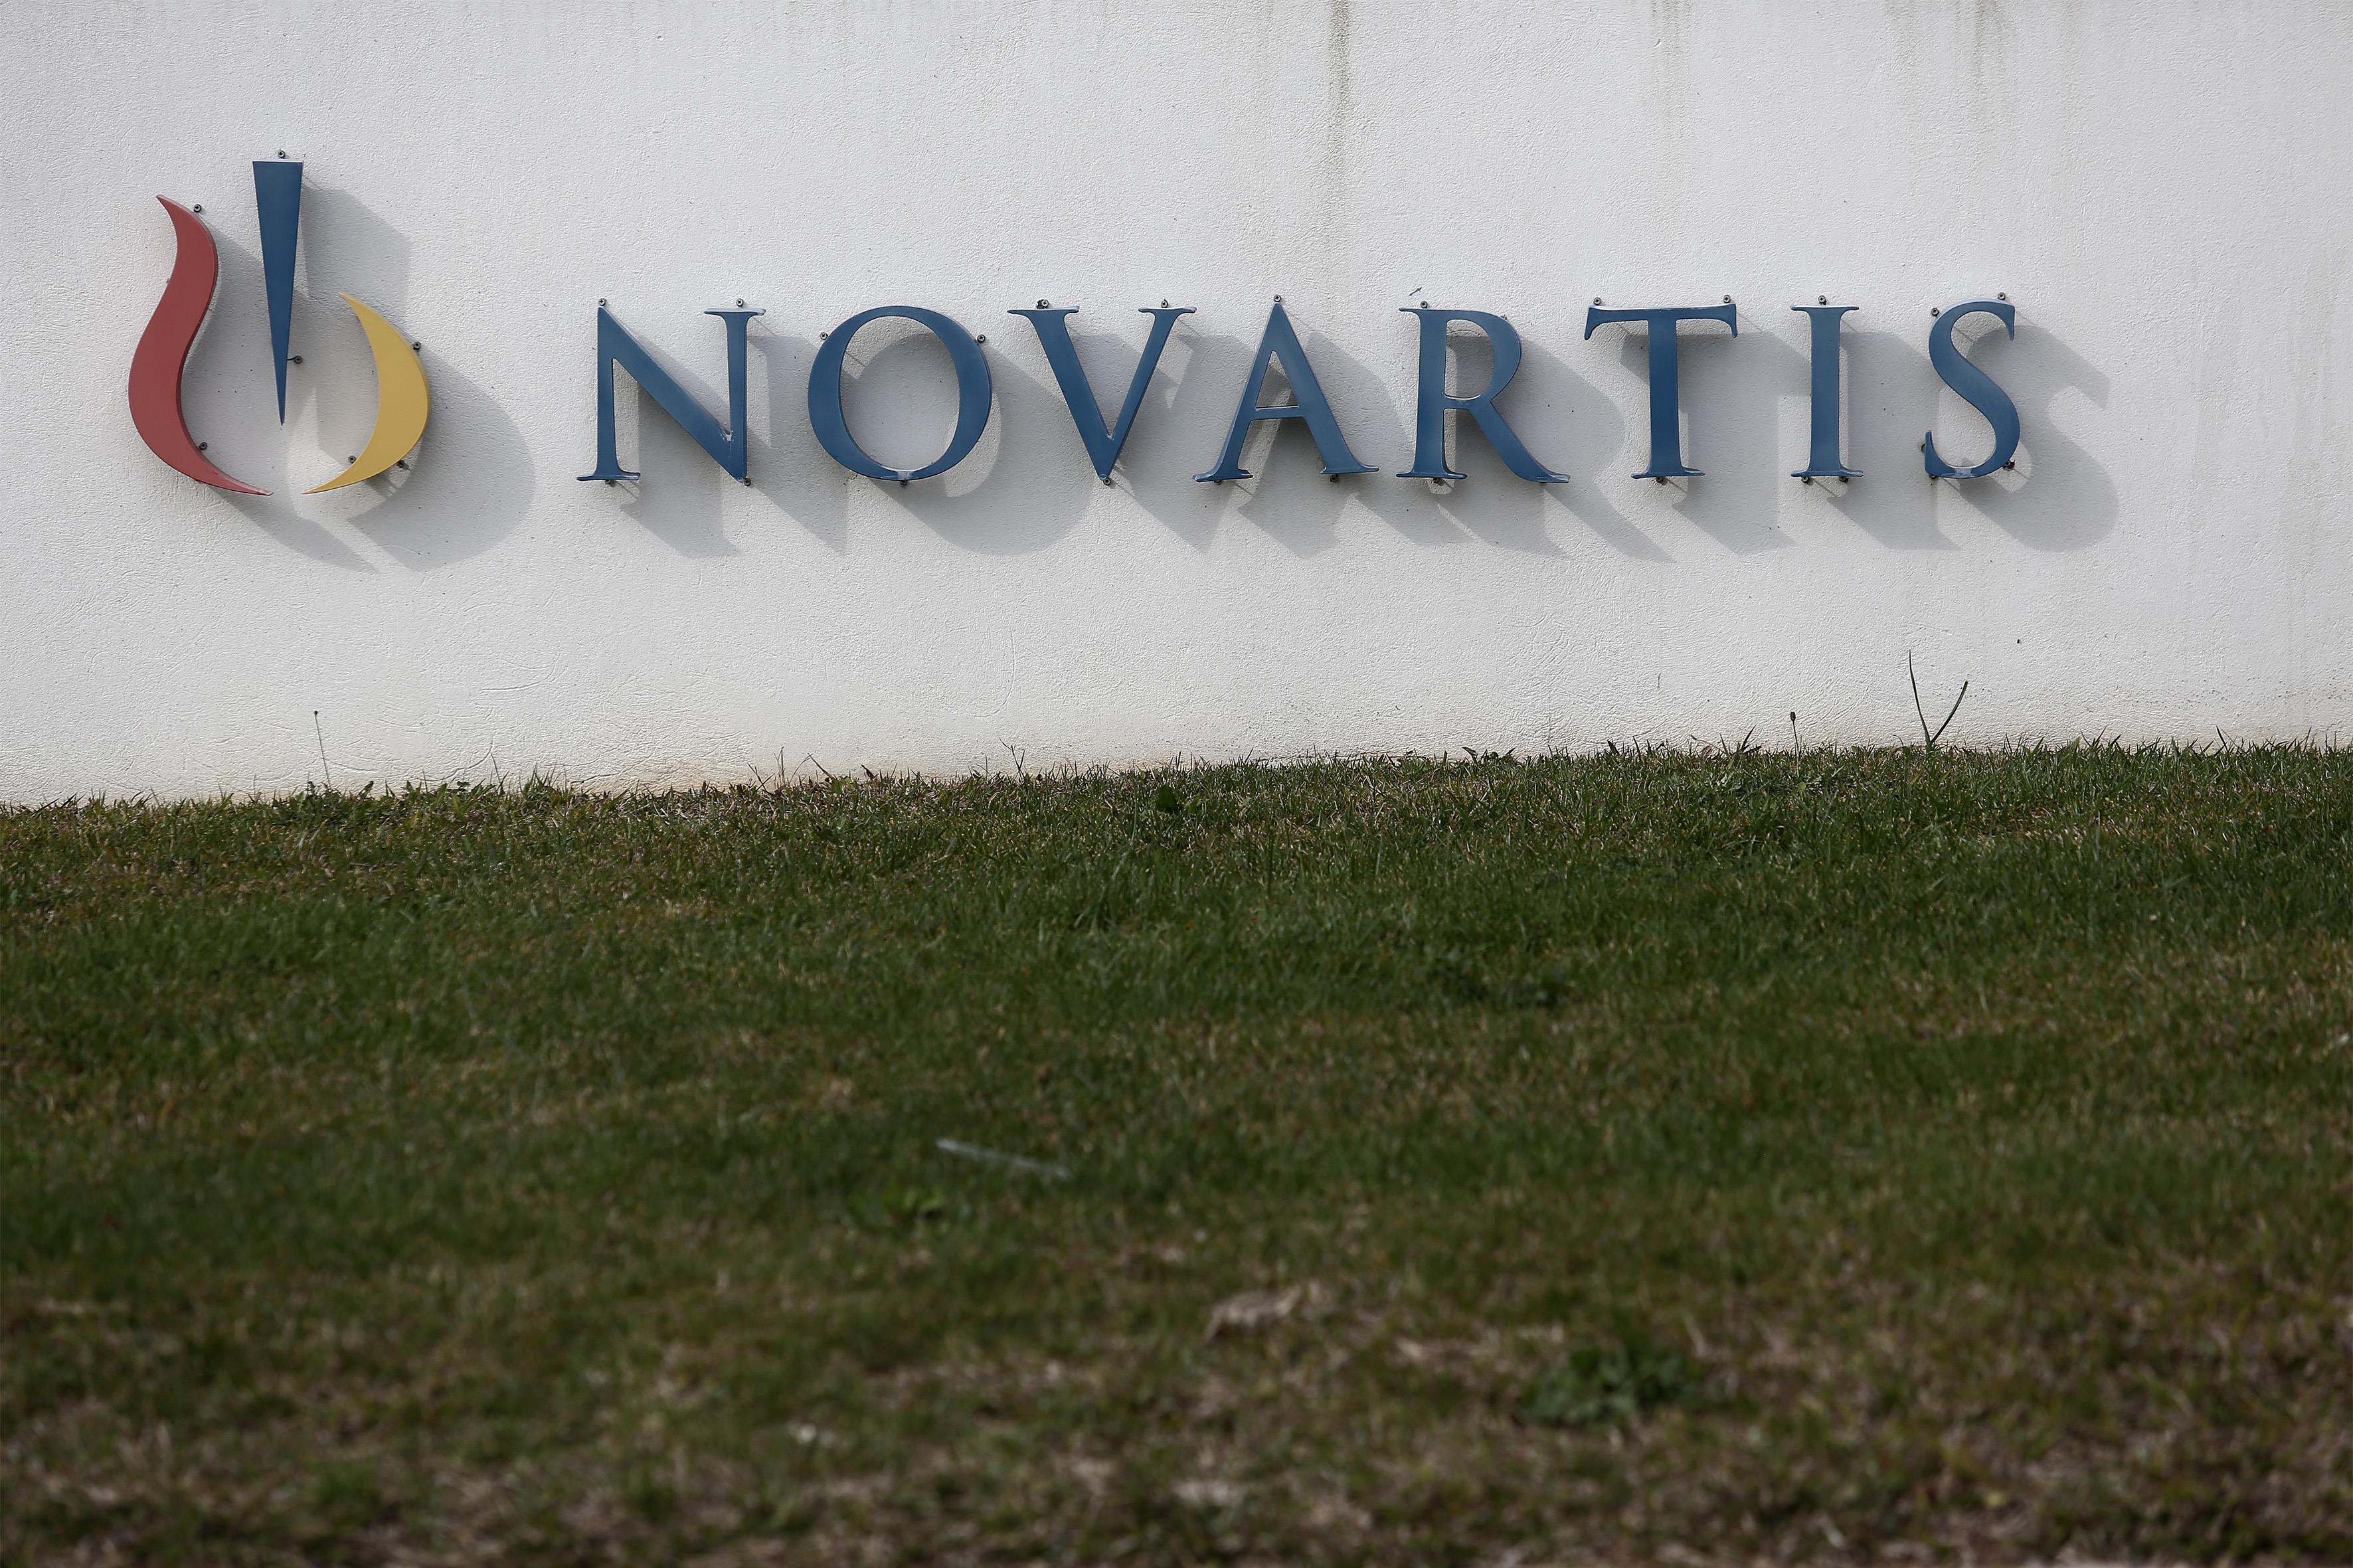 ΣΦΕΕ και PhRMA καταδικάζουν την επίθεση στα γραφεία της Novartis